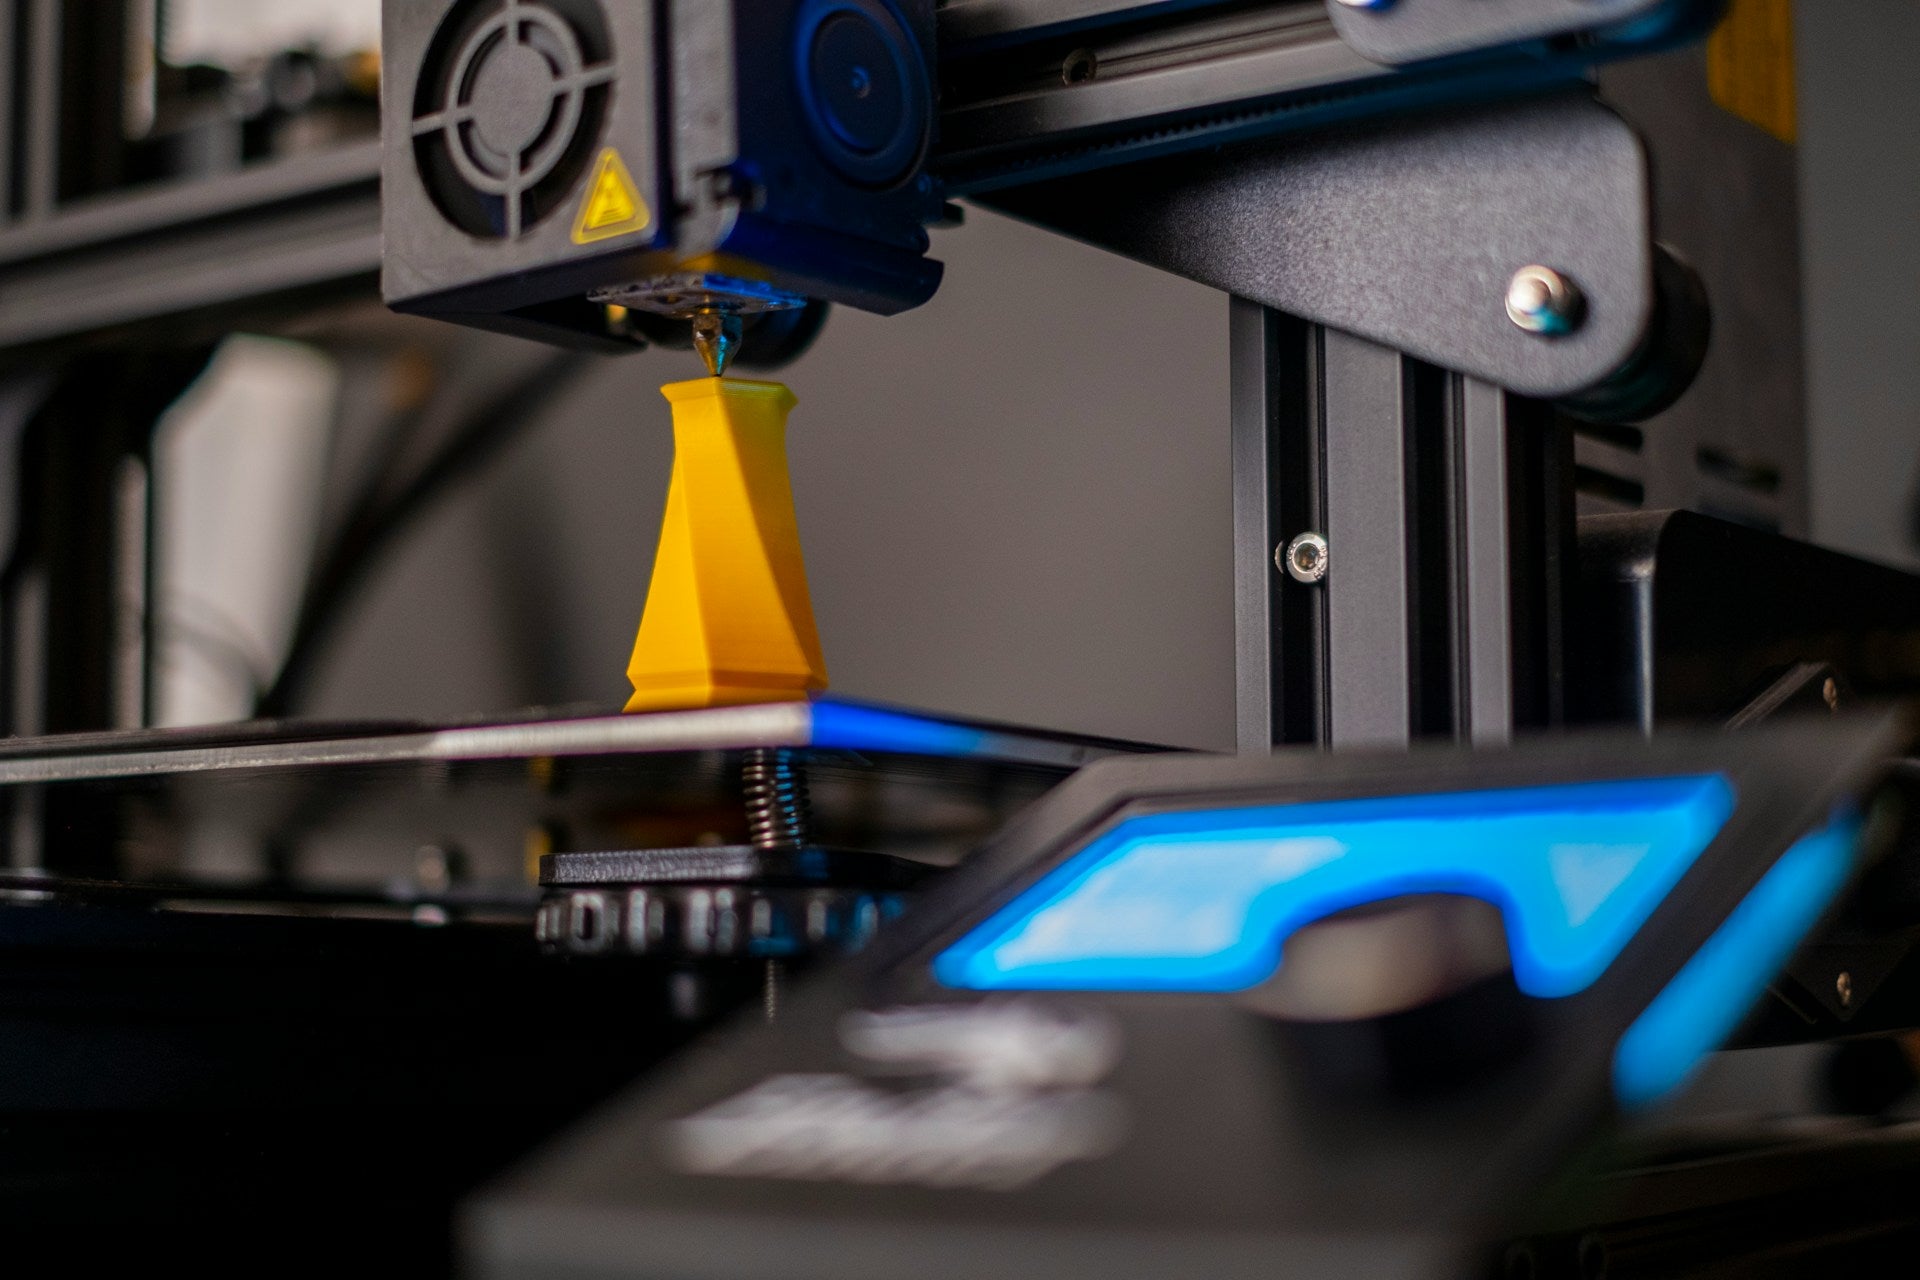 Presentamos las 5 mejores marcas de impresoras 3d